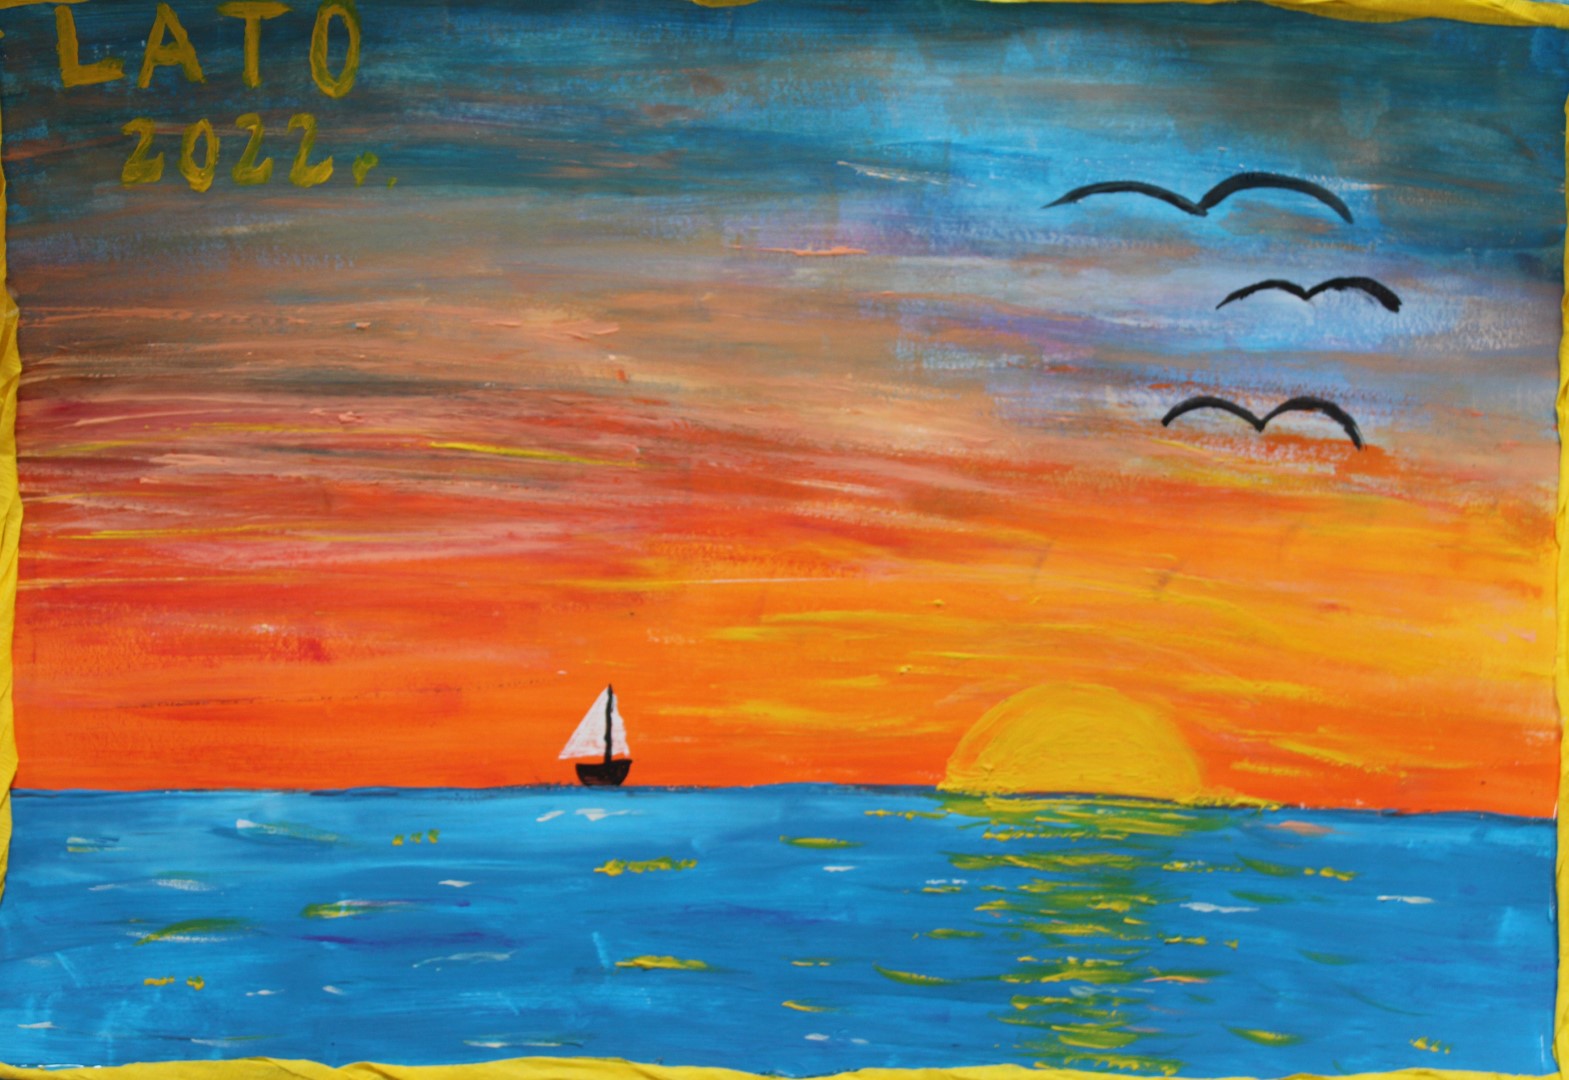 Zdjęcie przedstawia pracę plastyczną z Konkursu Cztery Pory Roku – LATO organizowanego przez Gminny Ośrodek Kultury w Stryszowie. Praca przedstawia zachód słońca na morzu. Na horyzoncie widnieje mała łódź i odbijające się w tafli wody zachodzące słońce. W powietrzu latają trzy mewy. Praca utrzymana jest w kolorze pomarańczowym, niebieskim i żółtym.